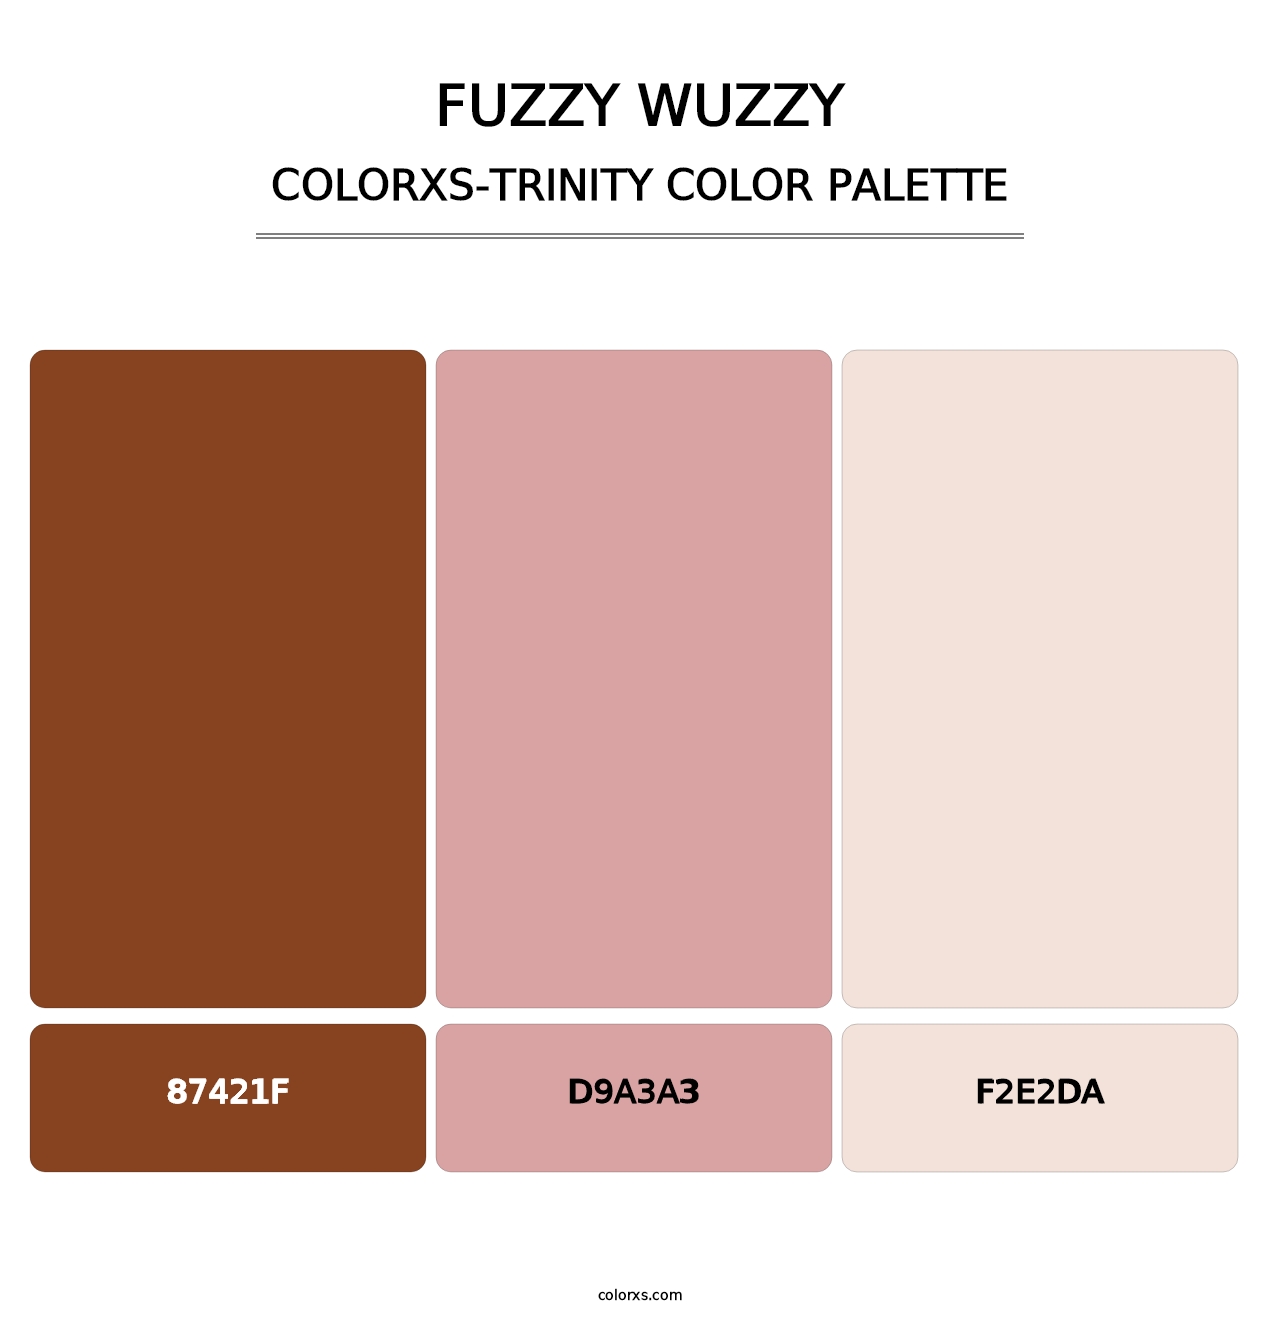 Fuzzy Wuzzy - Colorxs Trinity Palette